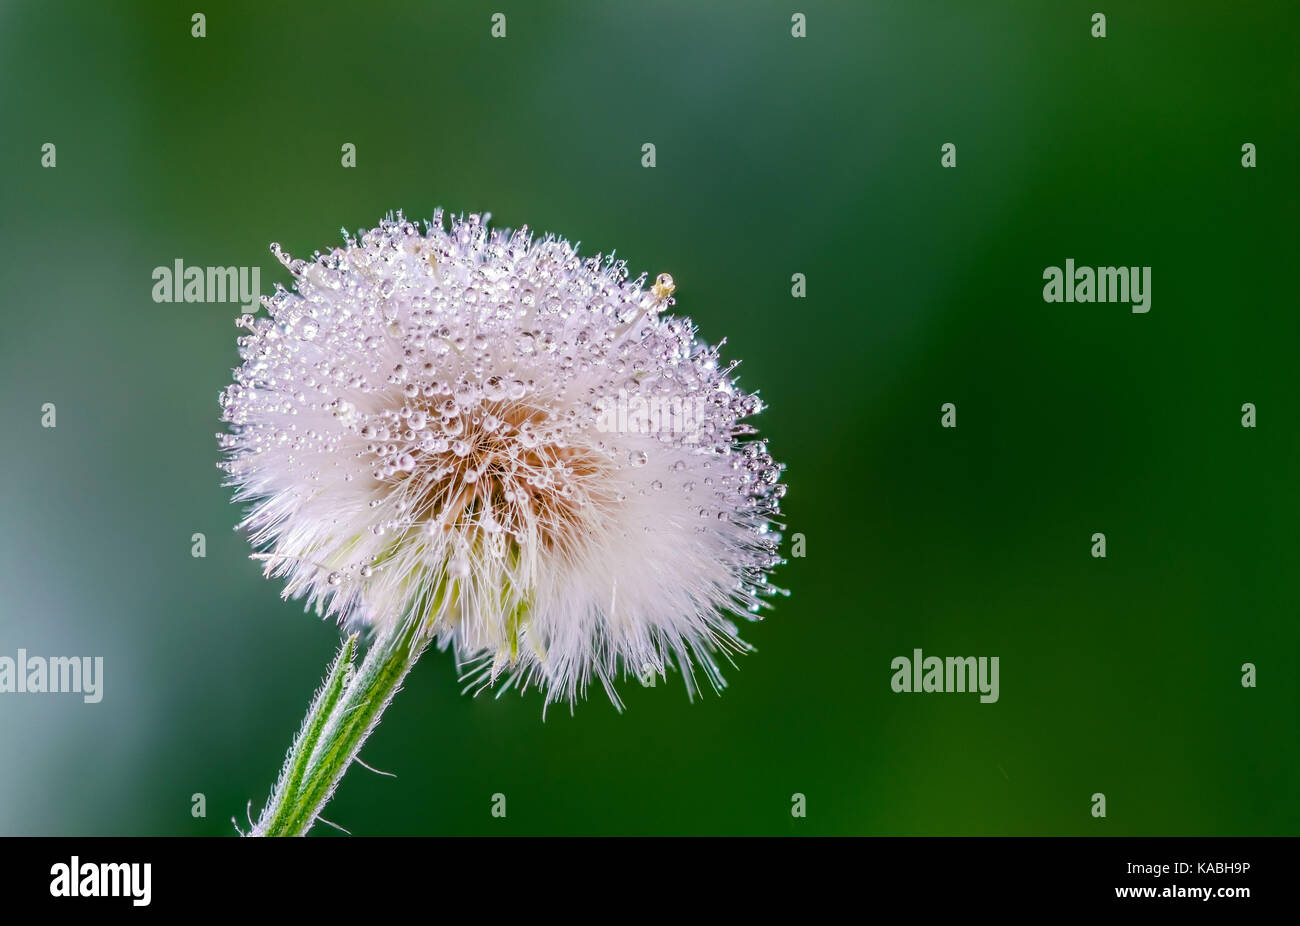 Primer plano de un super macro jaramago blanco cabeza floral y semillas, sobre un fondo verde, mostrando muchas gotas de agua de lluvia en la flor, semillas y pétalo Foto de stock